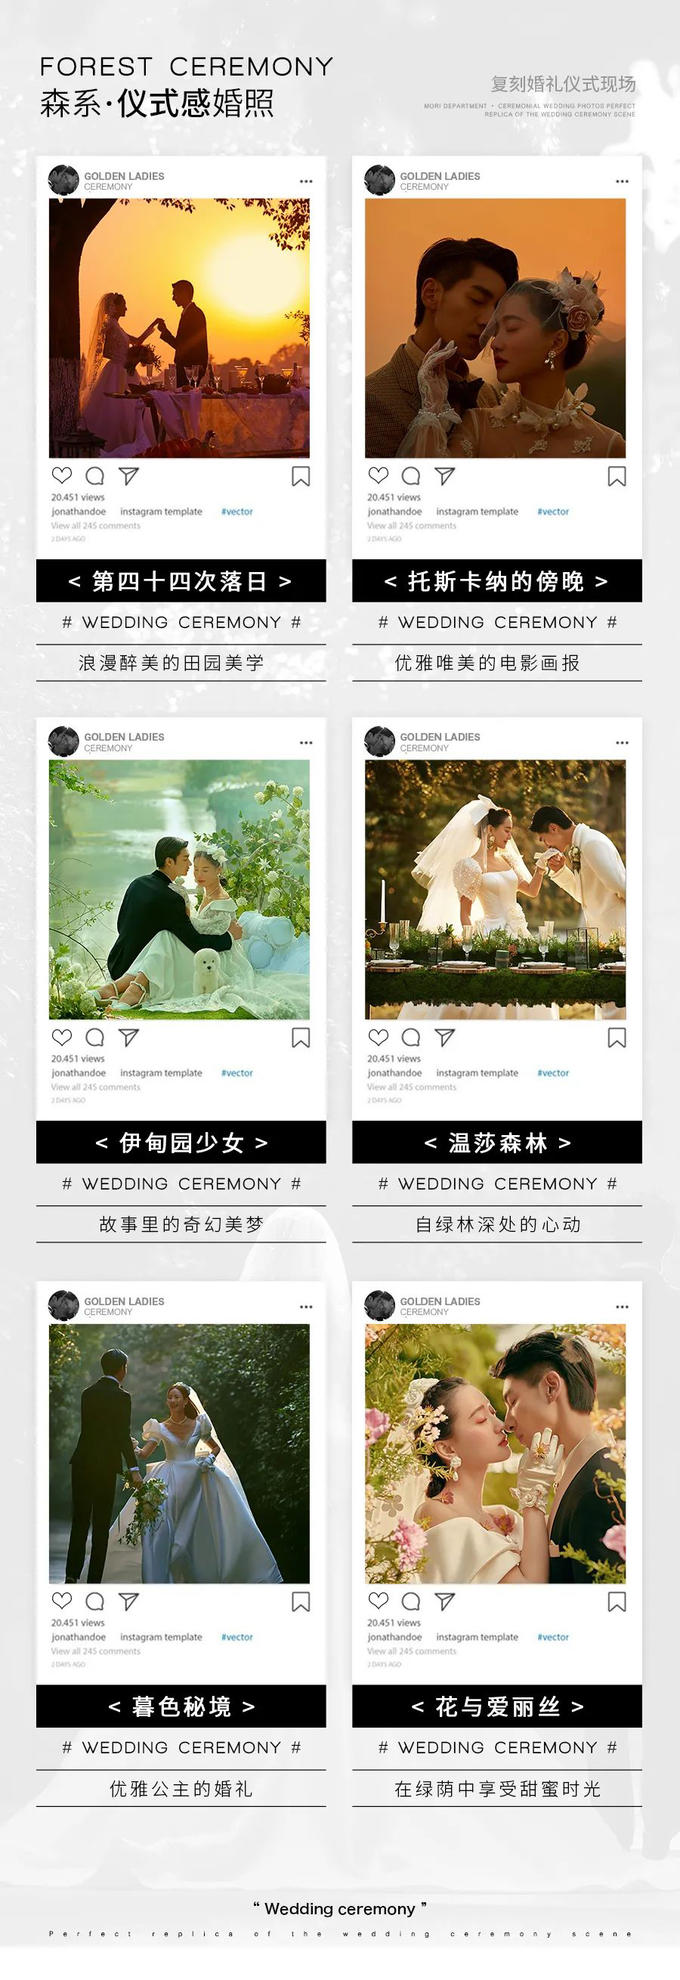 【店长推荐】婚礼仪式系列+黄金档期+1对1服务